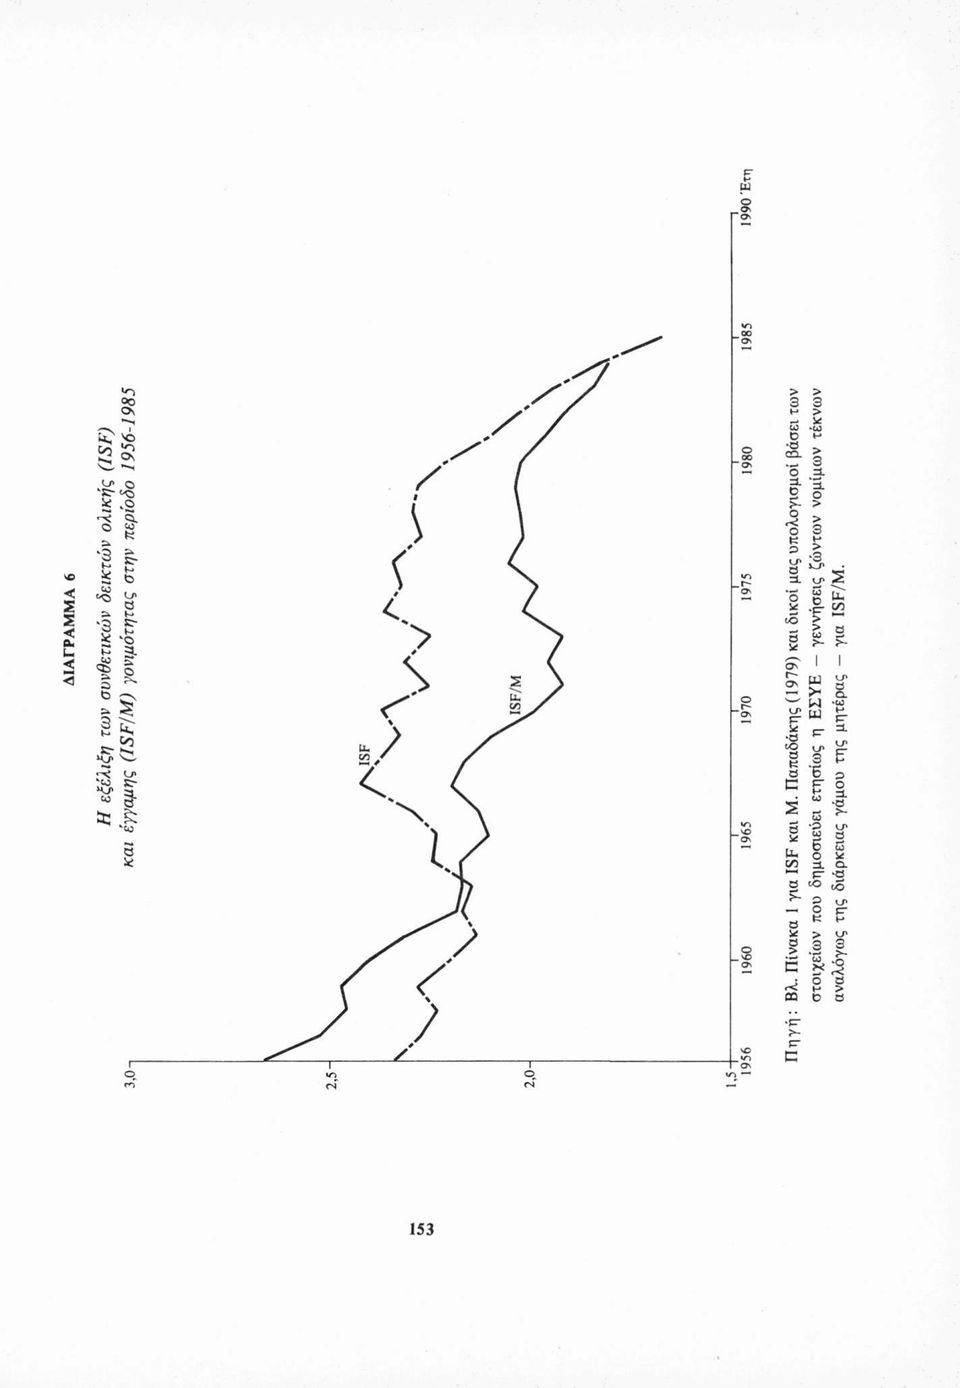 Παπαδάκης (1979) και δικοί μας υπολογισμοί βάσει των στοιχείων που δημοσιεύει